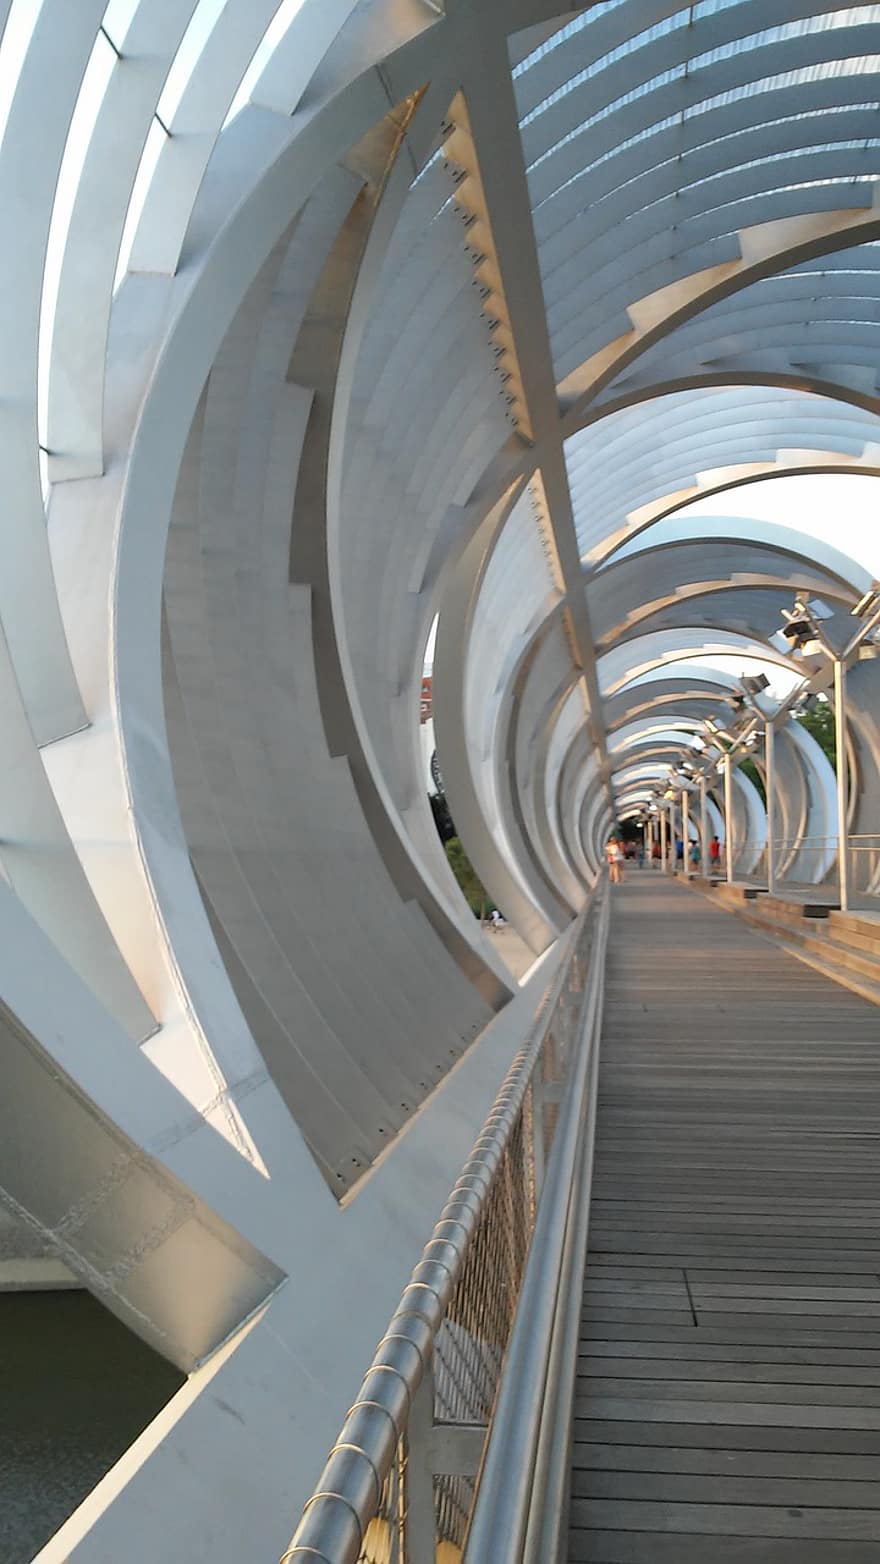 arkkitehtuuri, tunneli, kaupunki, silta, sisällä, moderni, design, rakennettu rakenne, futuristinen, abstrakti, lattianpäällyste